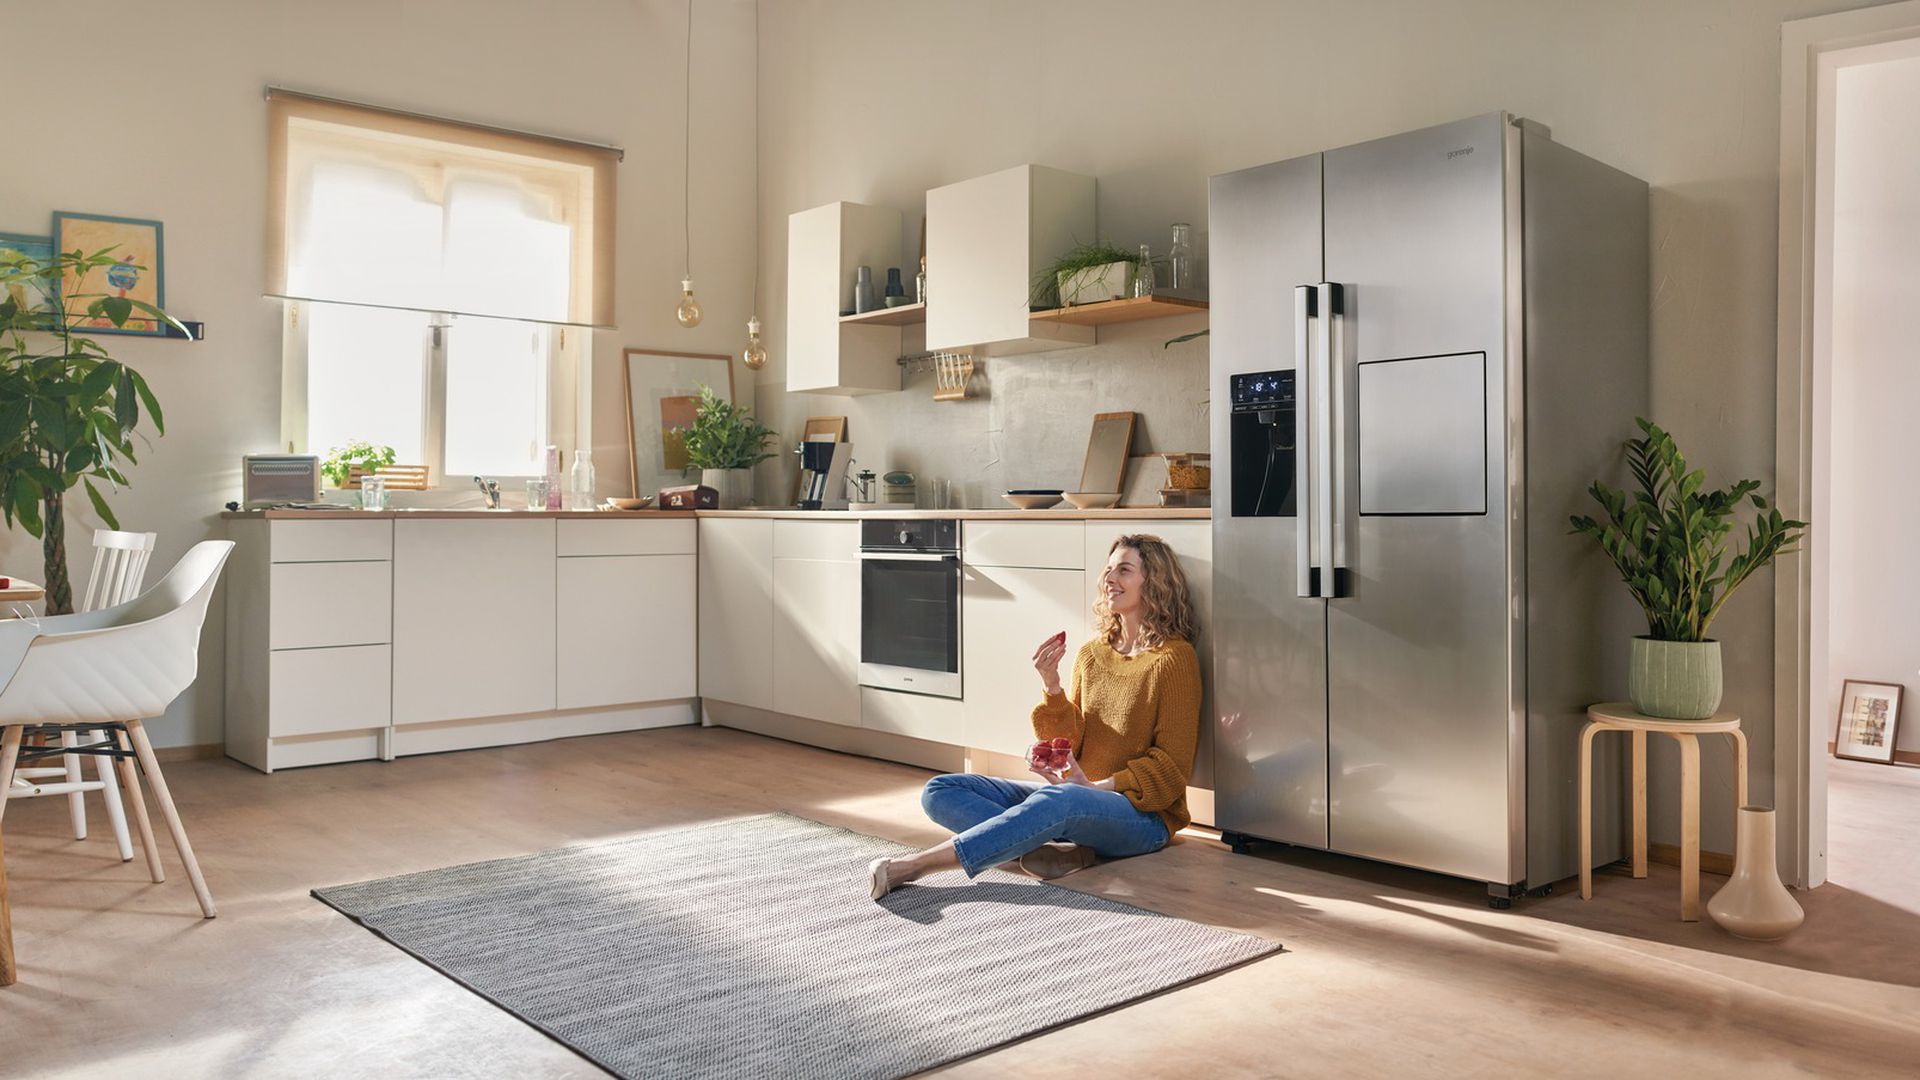 Как выбрать идеальный холодильник для вашей кухни